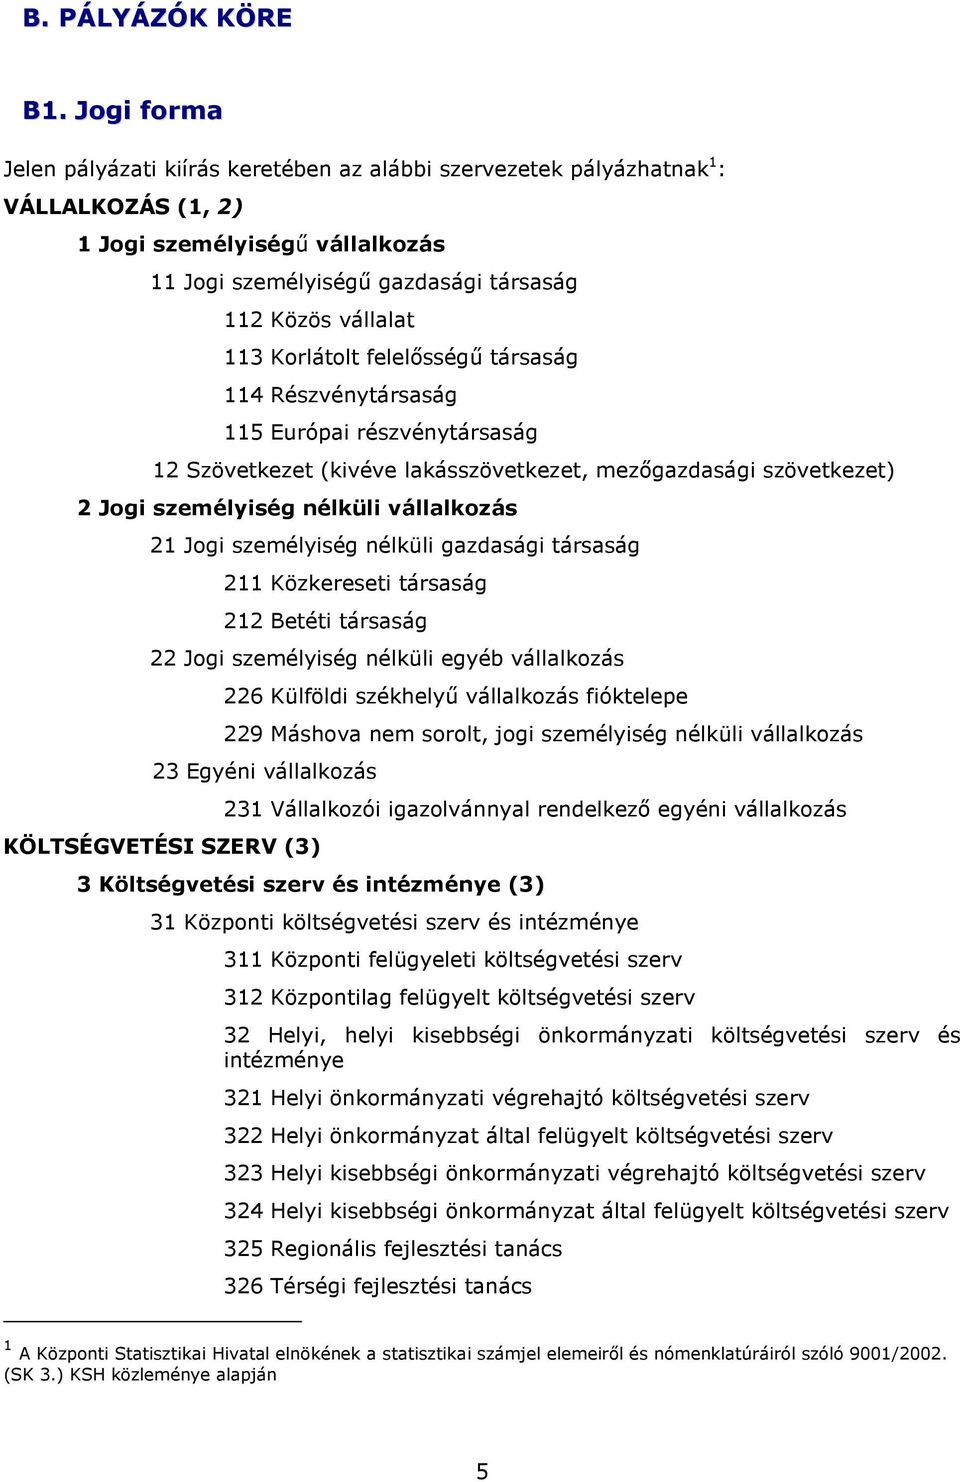 Korlátolt felelısségő társaság 114 Részvénytársaság 115 Európai részvénytársaság 12 Szövetkezet (kivéve lakásszövetkezet, mezıgazdasági szövetkezet) 2 Jogi személyiség nélküli vállalkozás 21 Jogi